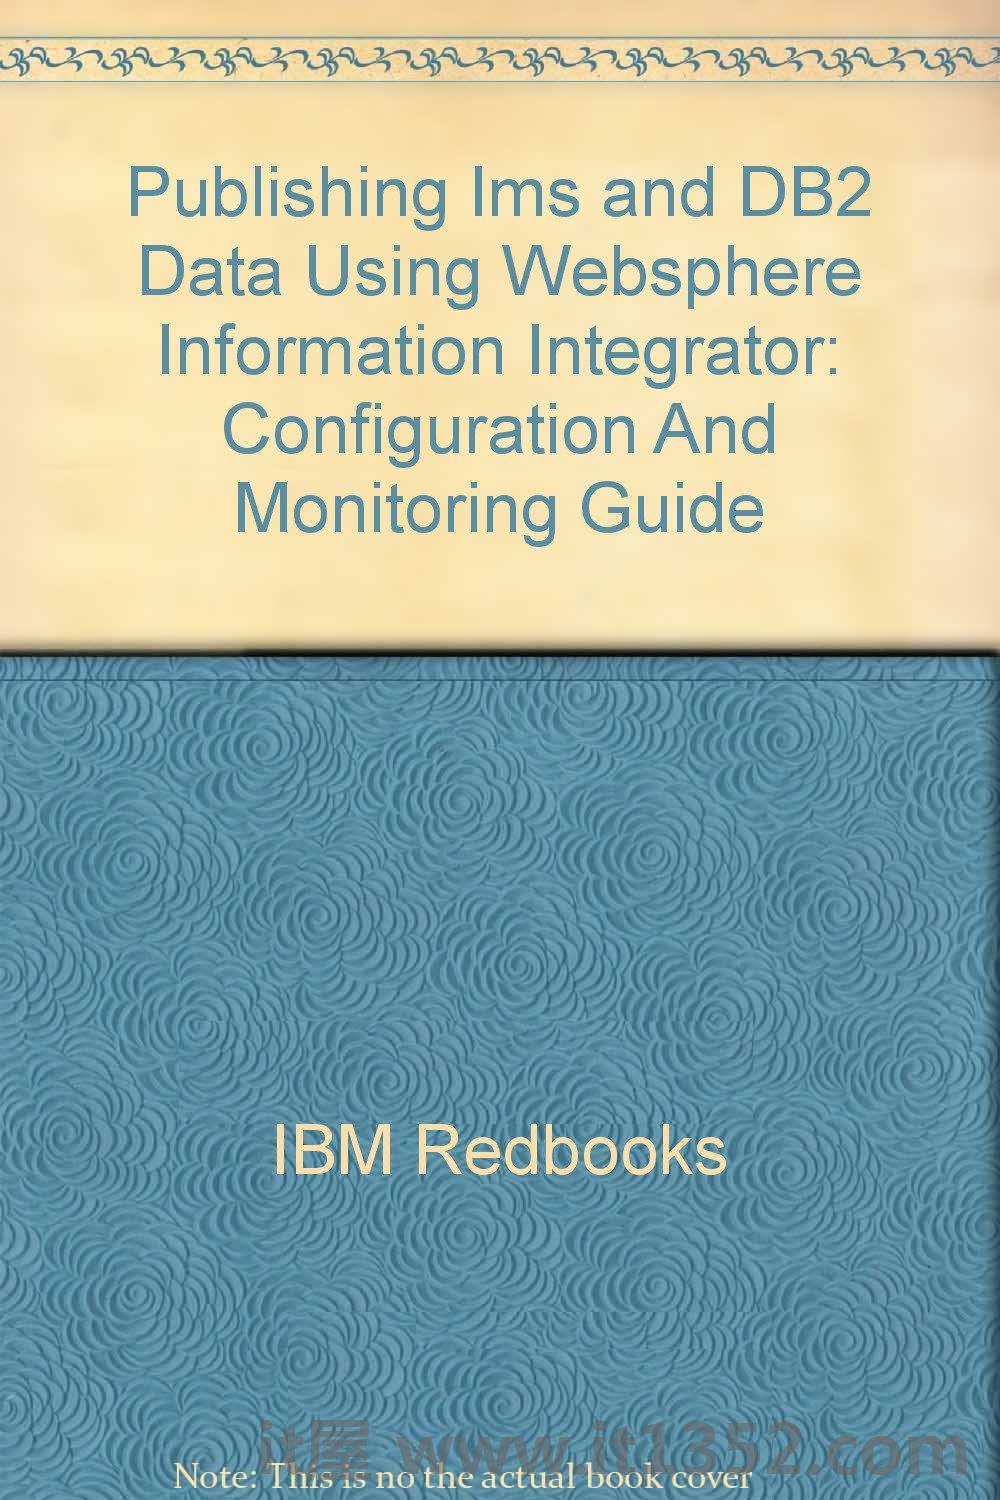 使用Websphere信息集成器发布Ims和DB2数据:配置和监控指南